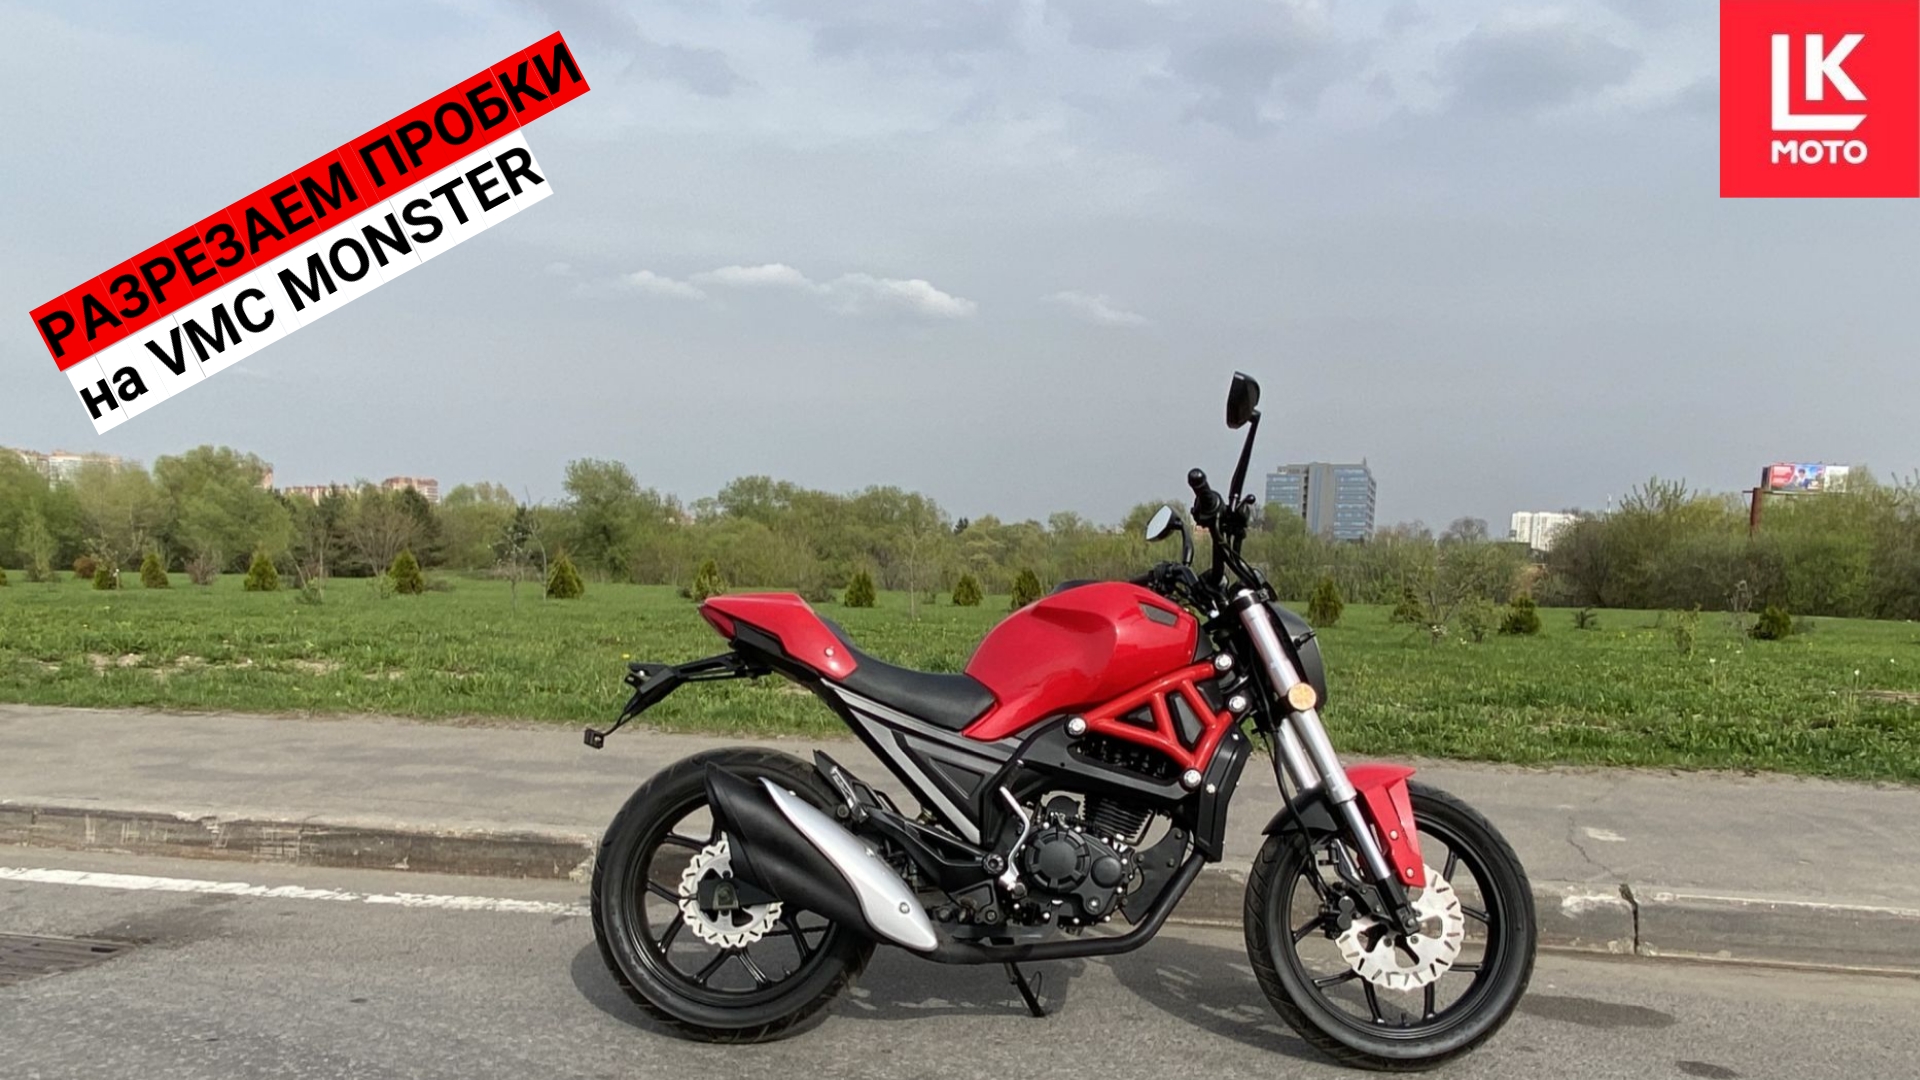 Мотоцикл VMC MONSTER разрезает Московские Пробки